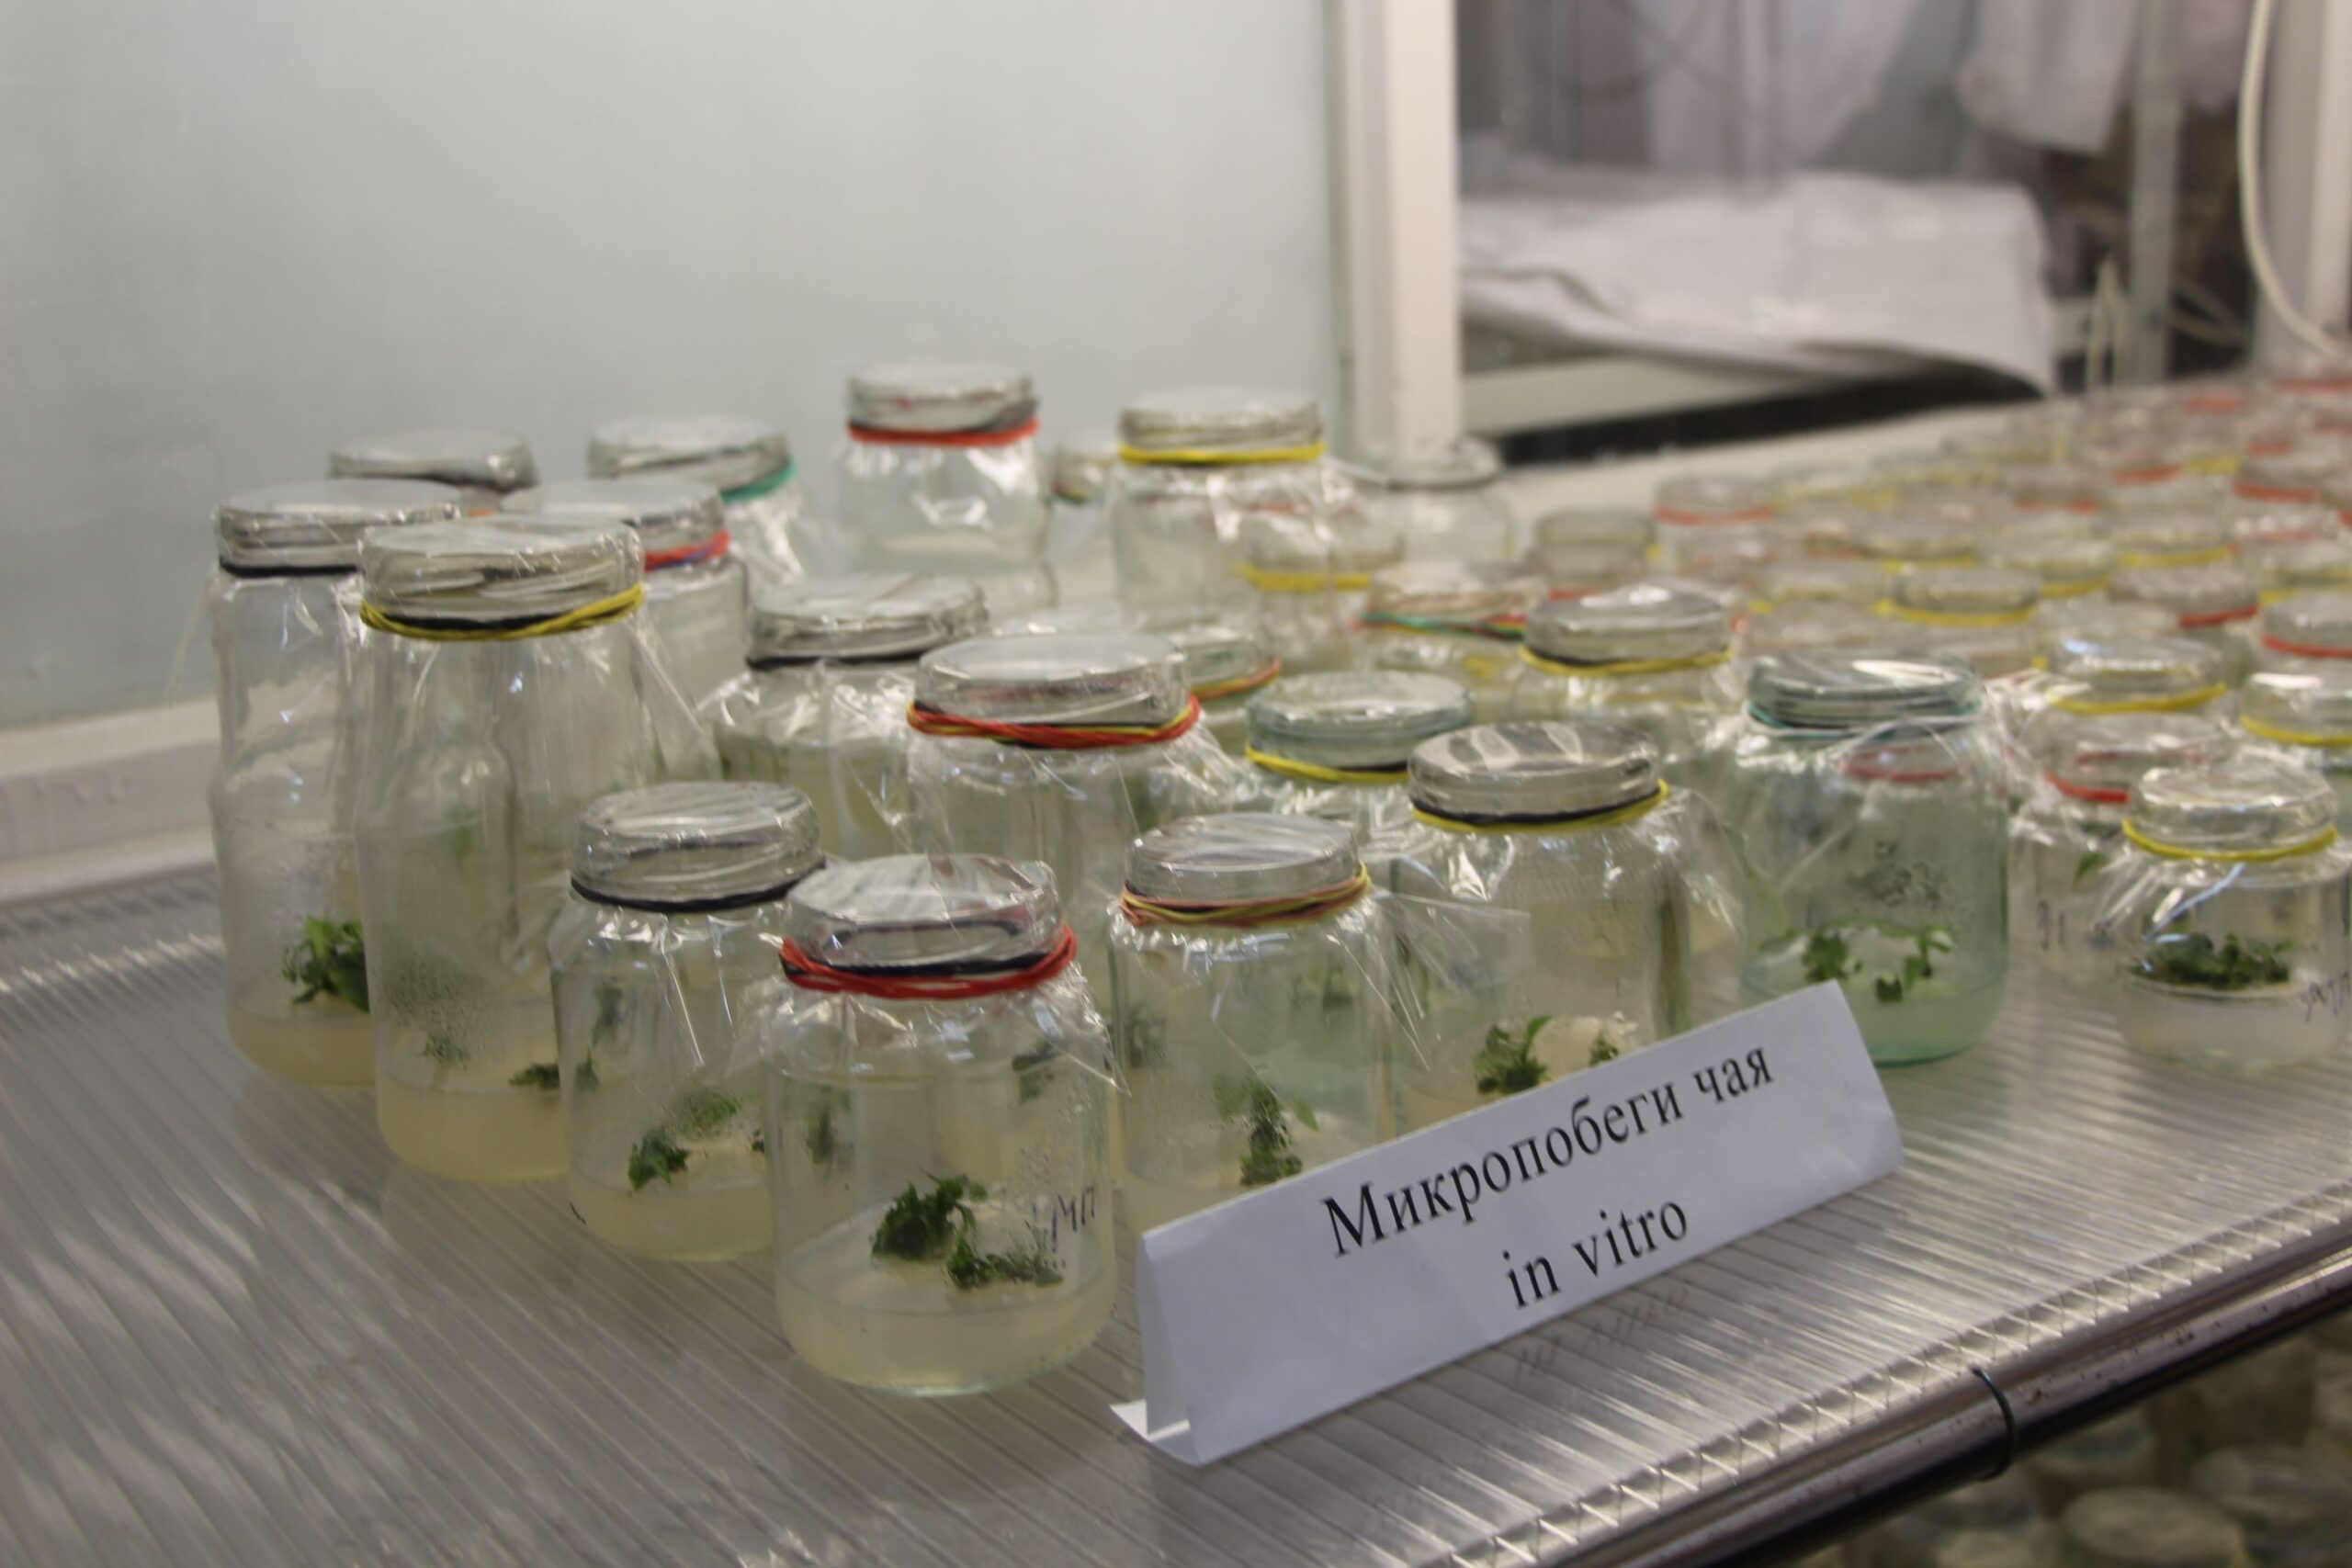 Вы сейчас просматриваете В Субтропическом научном центре РАН впервые проводятся работы по введению и сохранению растений чая в условиях in vitro